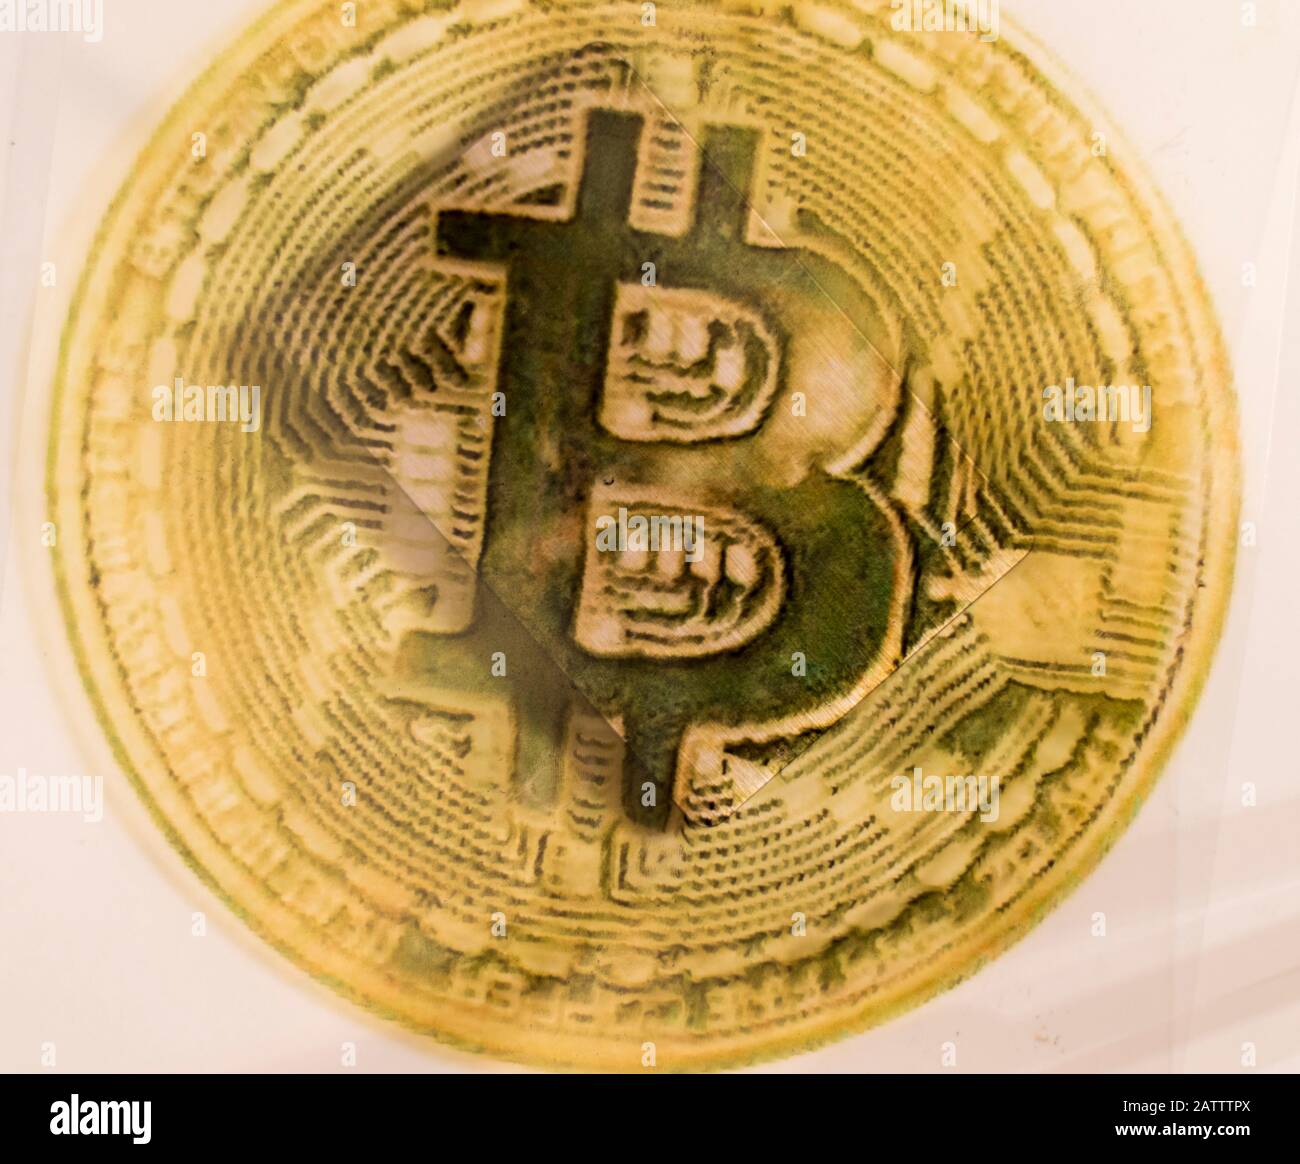 Le signe de crypto-monnaie Bitcoin et un périphérique de stockage de données externe se trouvent sur la même surface. La composition met l'accent sur l'argent donné. Russie. Banque D'Images